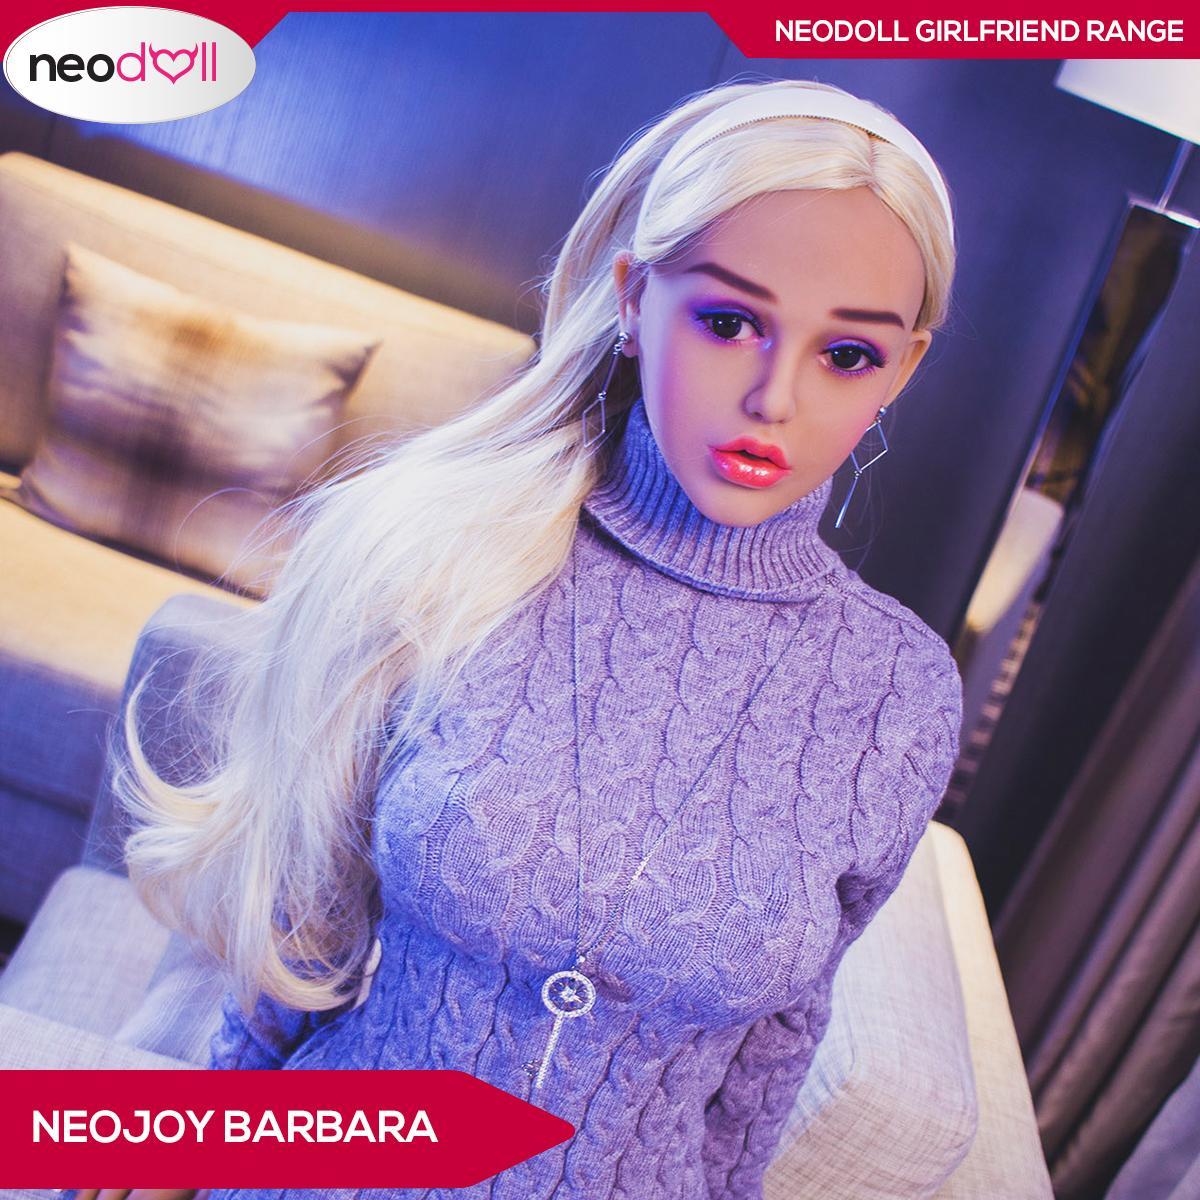 Neodoll Girlfriend Barbara - Realistic Sex Doll - 148cm